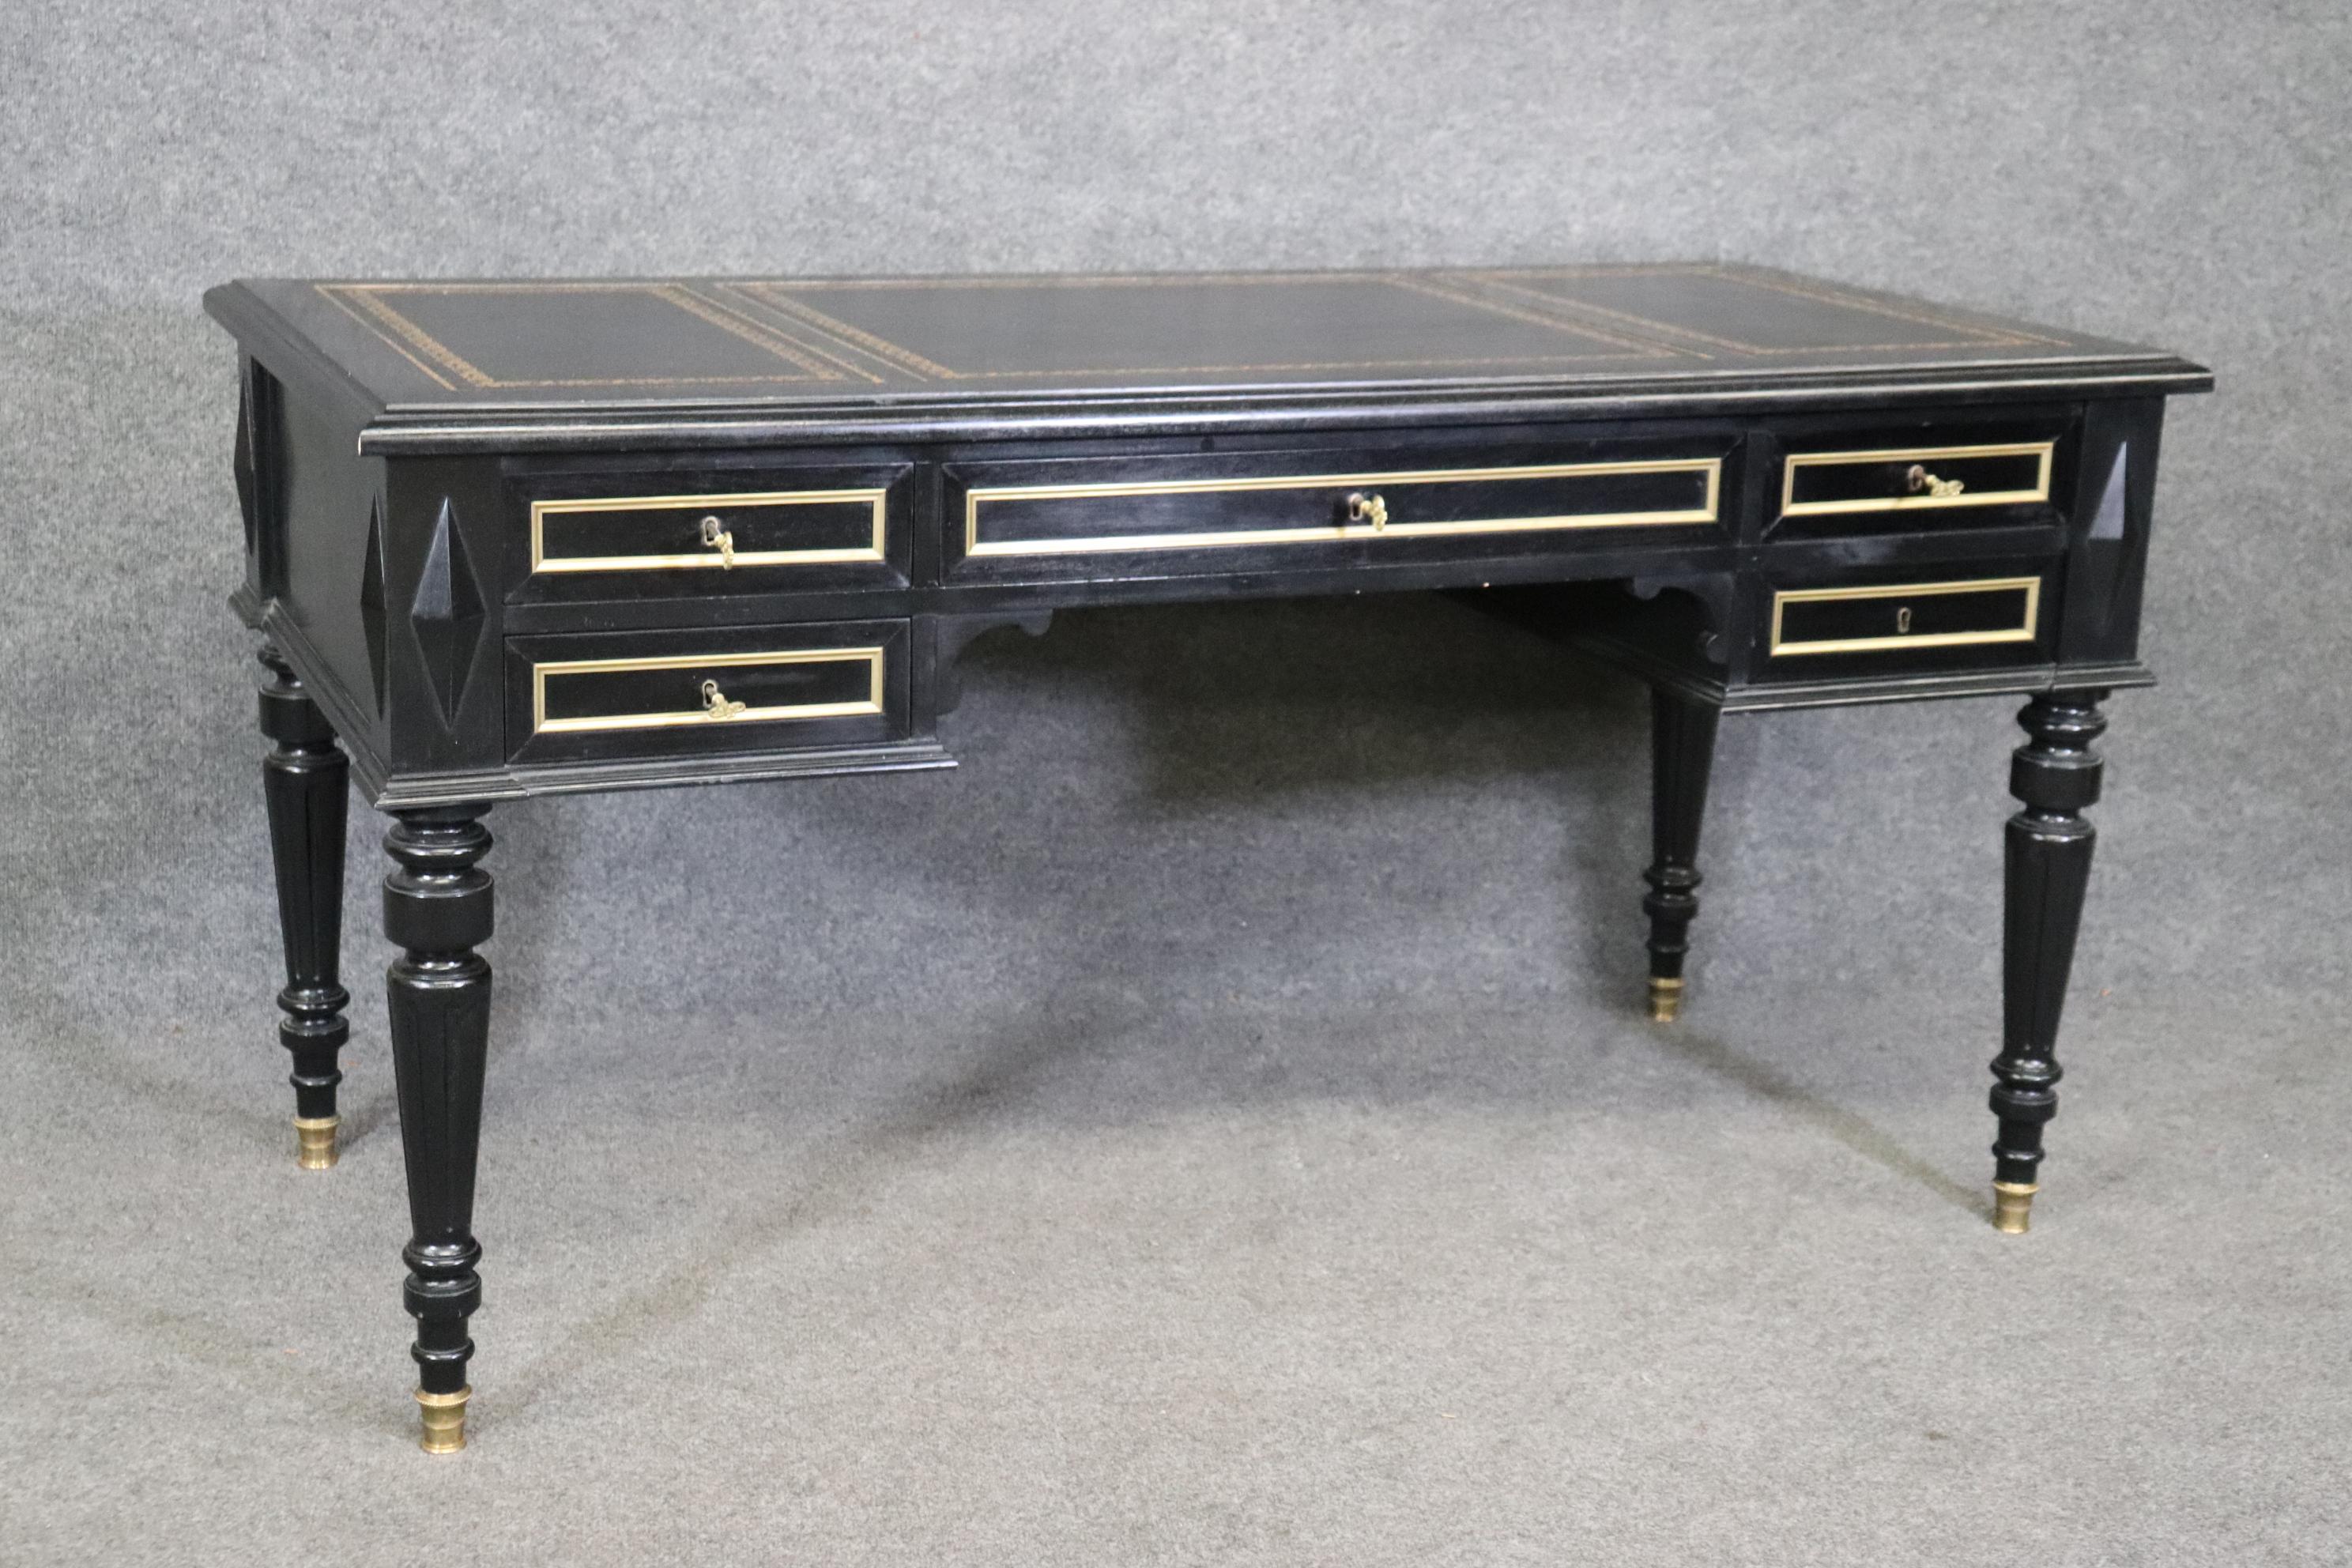 Dies ist ein prächtiger Schreibtisch in Baker-Qualität mit Messingbeschlägen und einer wunderschönen goldgeprägten und bearbeiteten Lederplatte. Der Schreibtisch ist mit schwarzem Lack ebonisiert und zeichnet sich durch eine bemerkenswerte